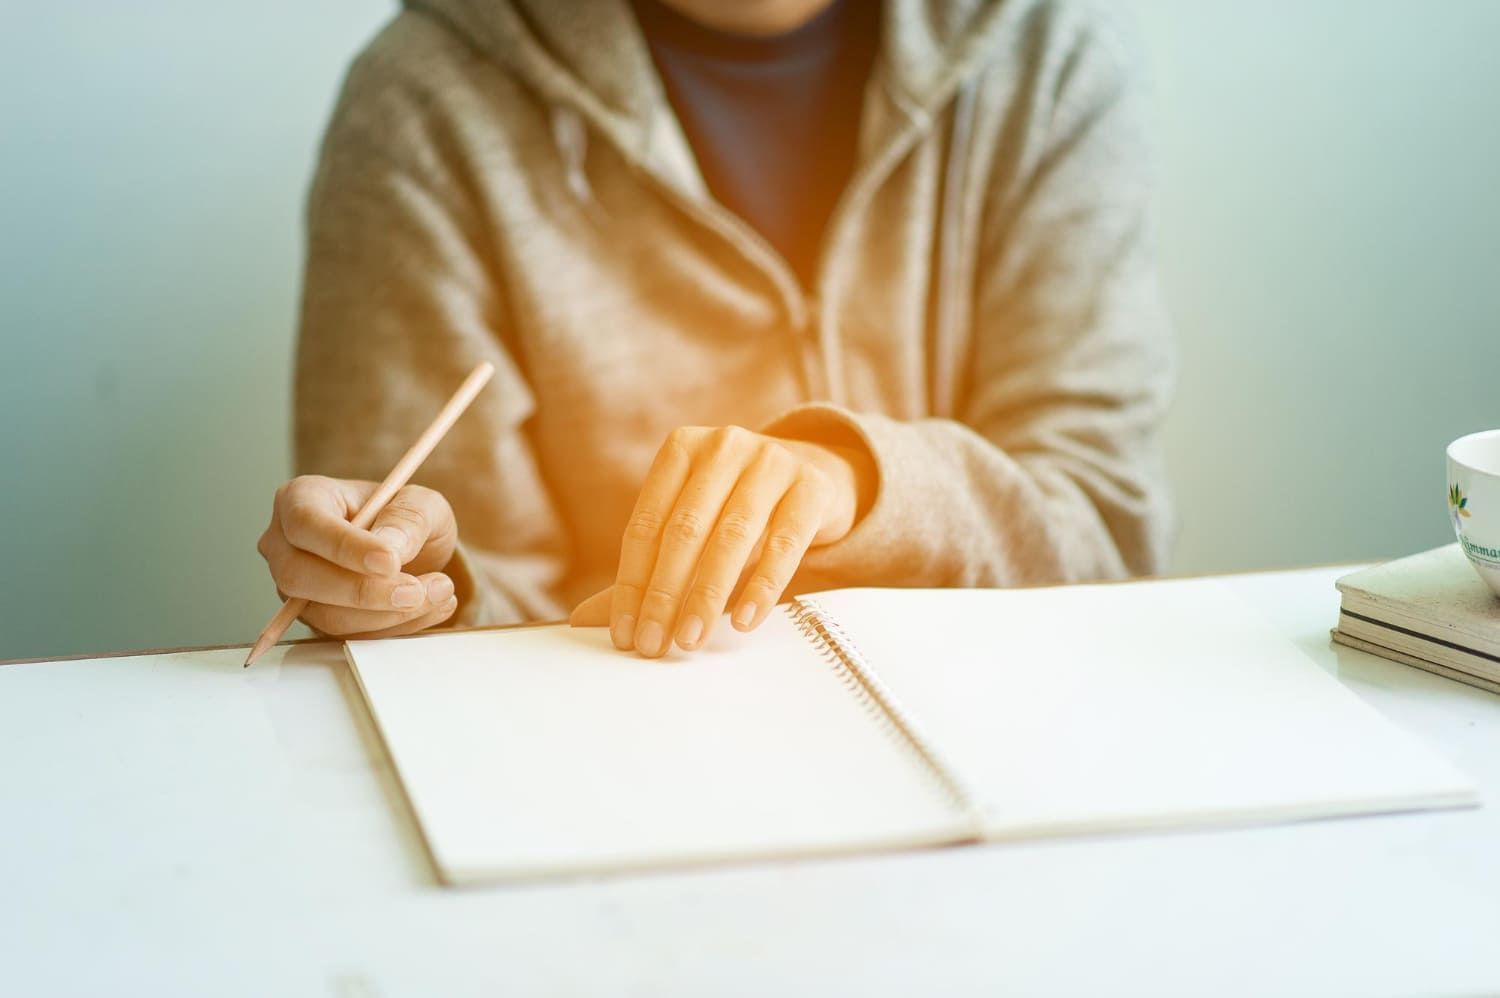 Mãos de pessoa segurando um lápis e folheando um caderno sobre uma mesa tentando fazer uma redação de 20 linhas